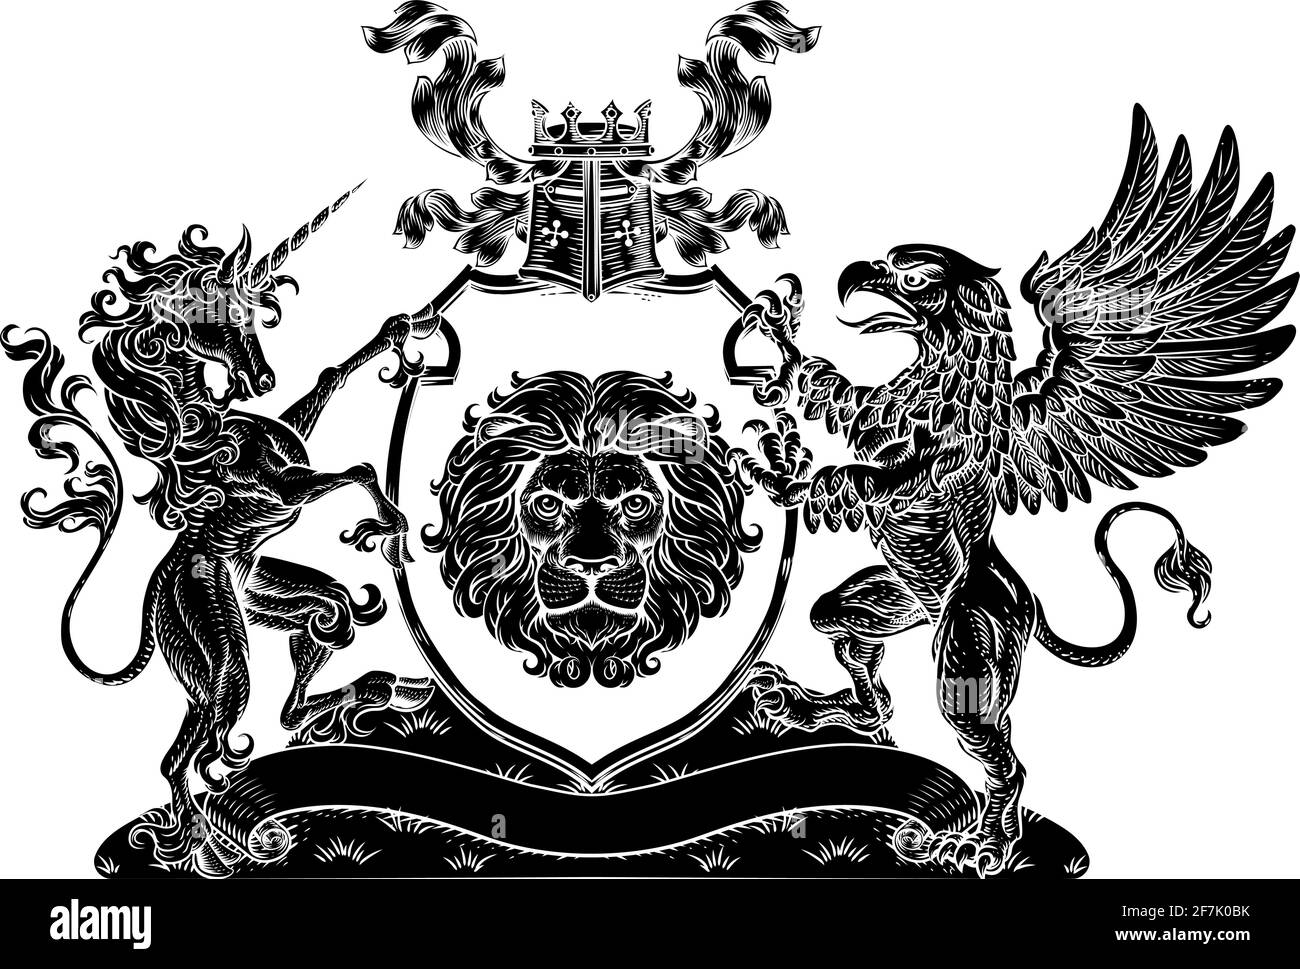 Armoiries Crest Griffin Unicorn Lion Shield Illustration de Vecteur